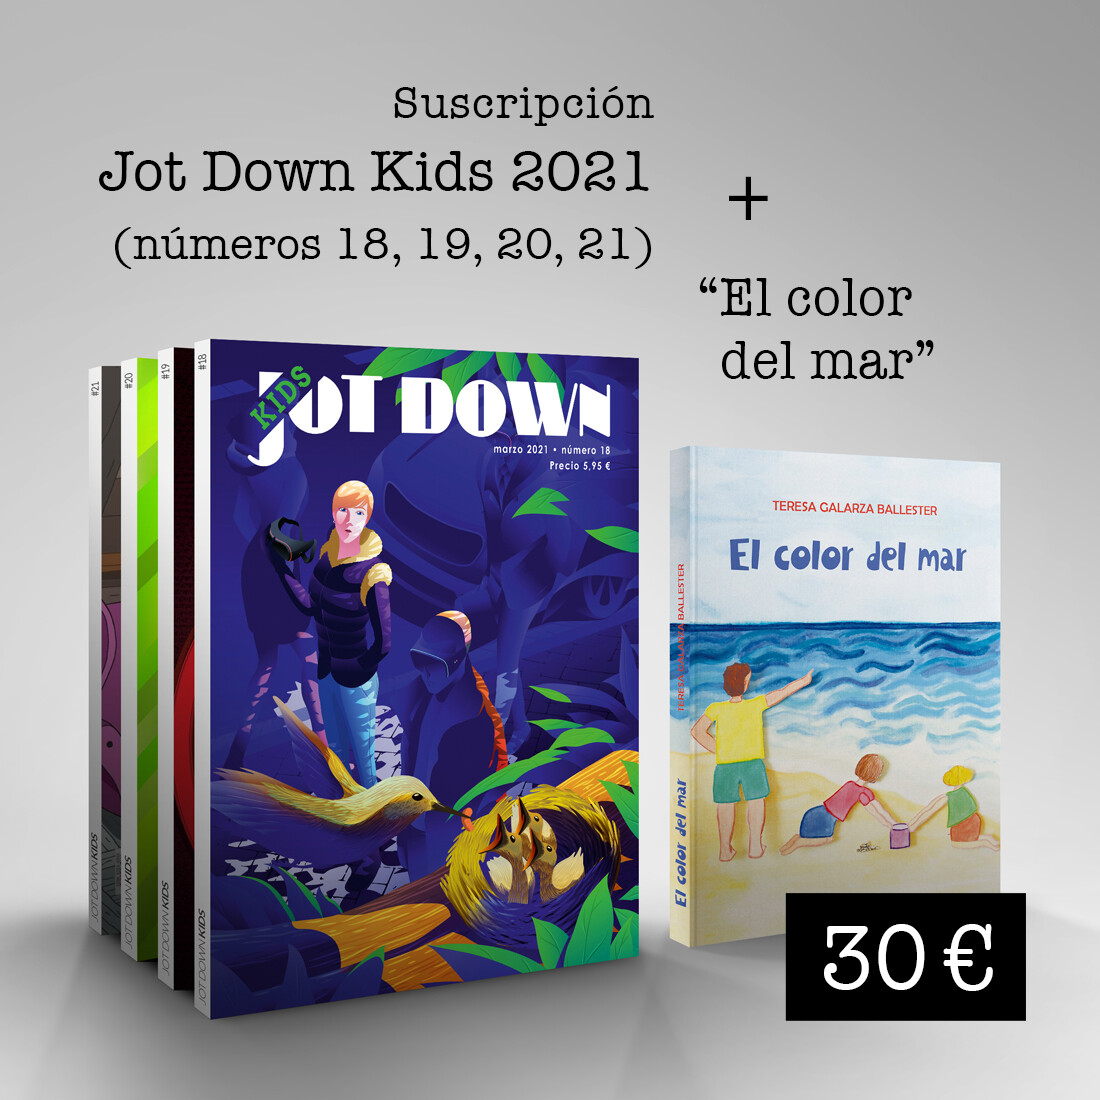 Suscripción Jot Down Kids 2021 (nº18 al nº 21) + El color del mar